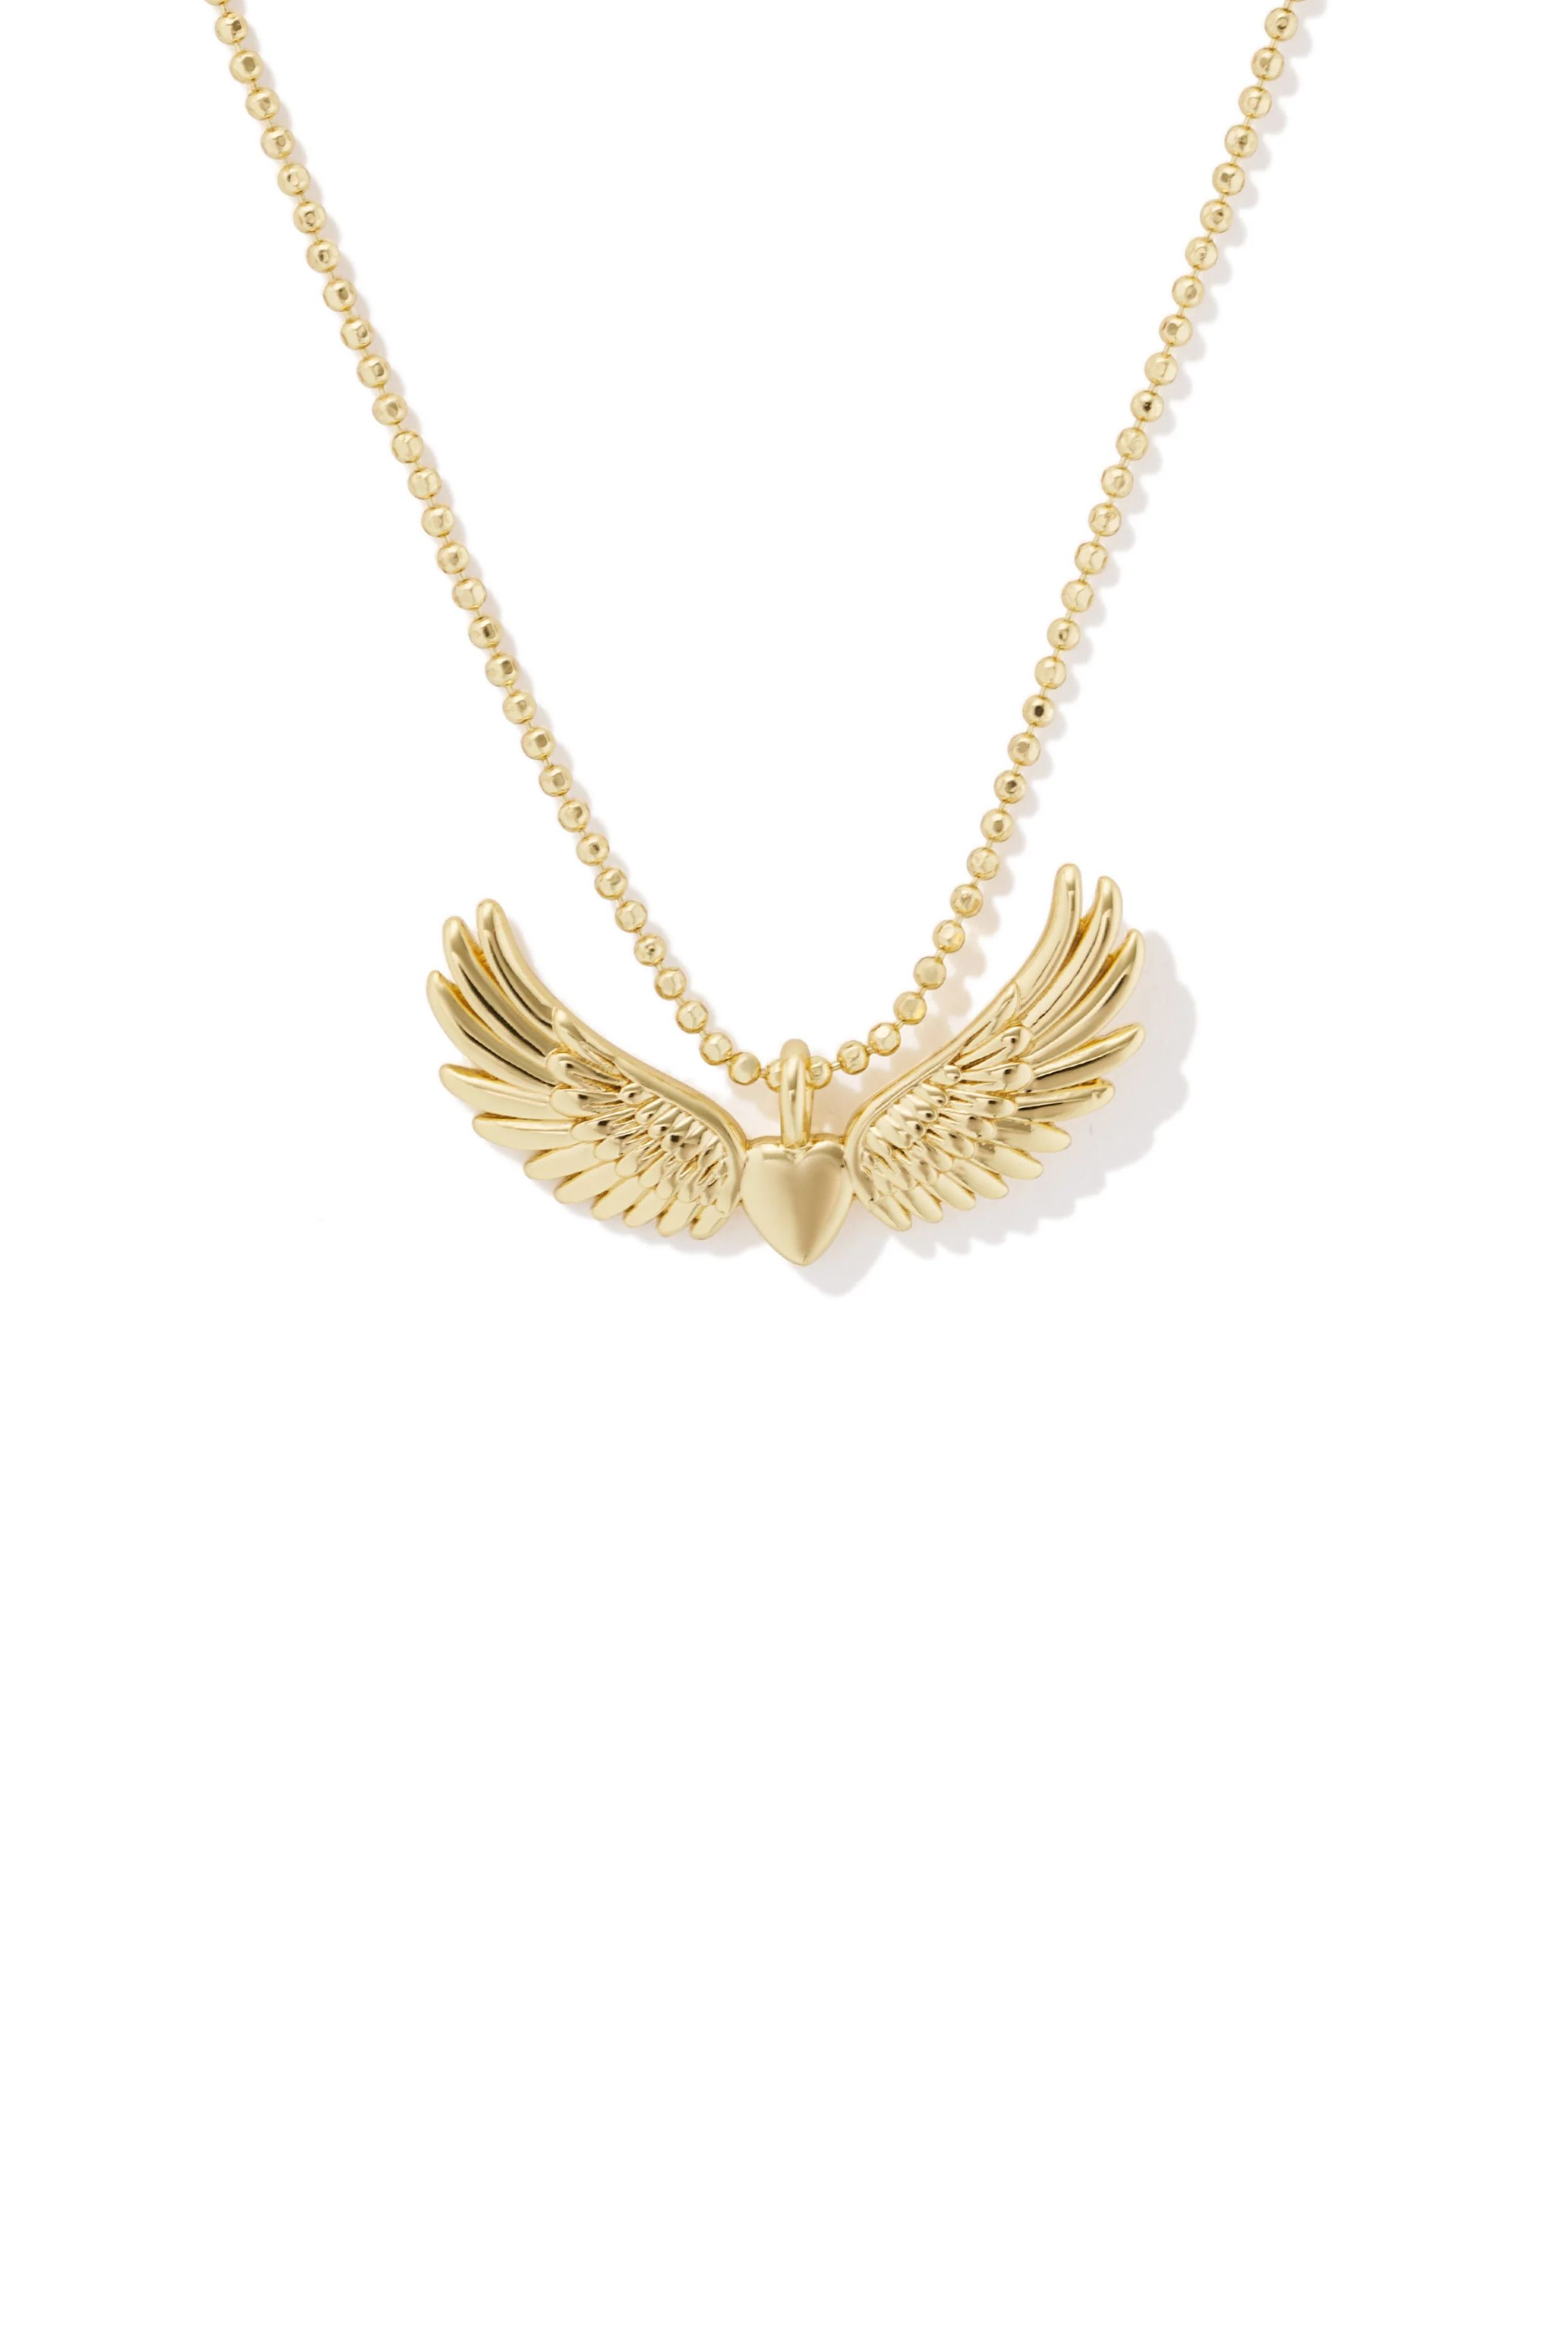 Pegasus Charm Necklace | Stella & Dot